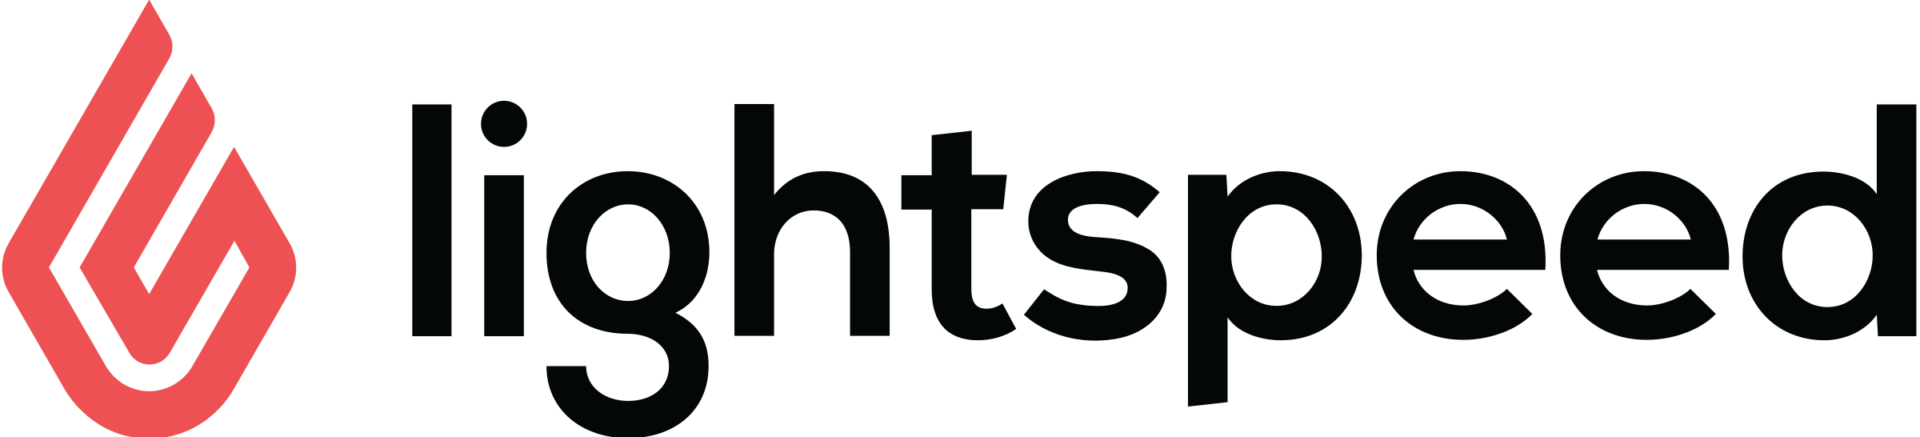 lightspeed-logo-png-transparent